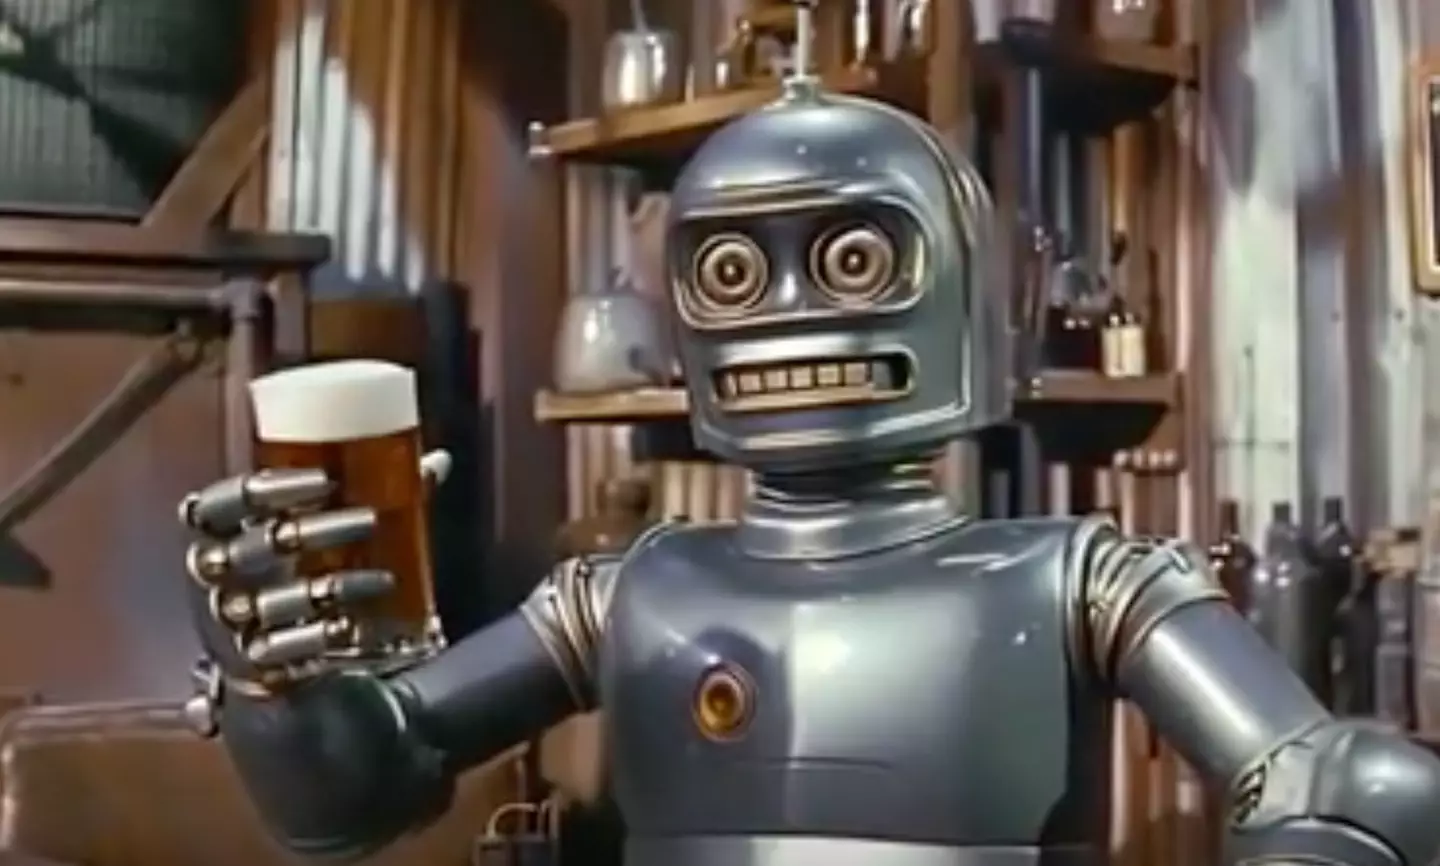 Bender the beer-guzzling robot. (X/@demonflyingfox)